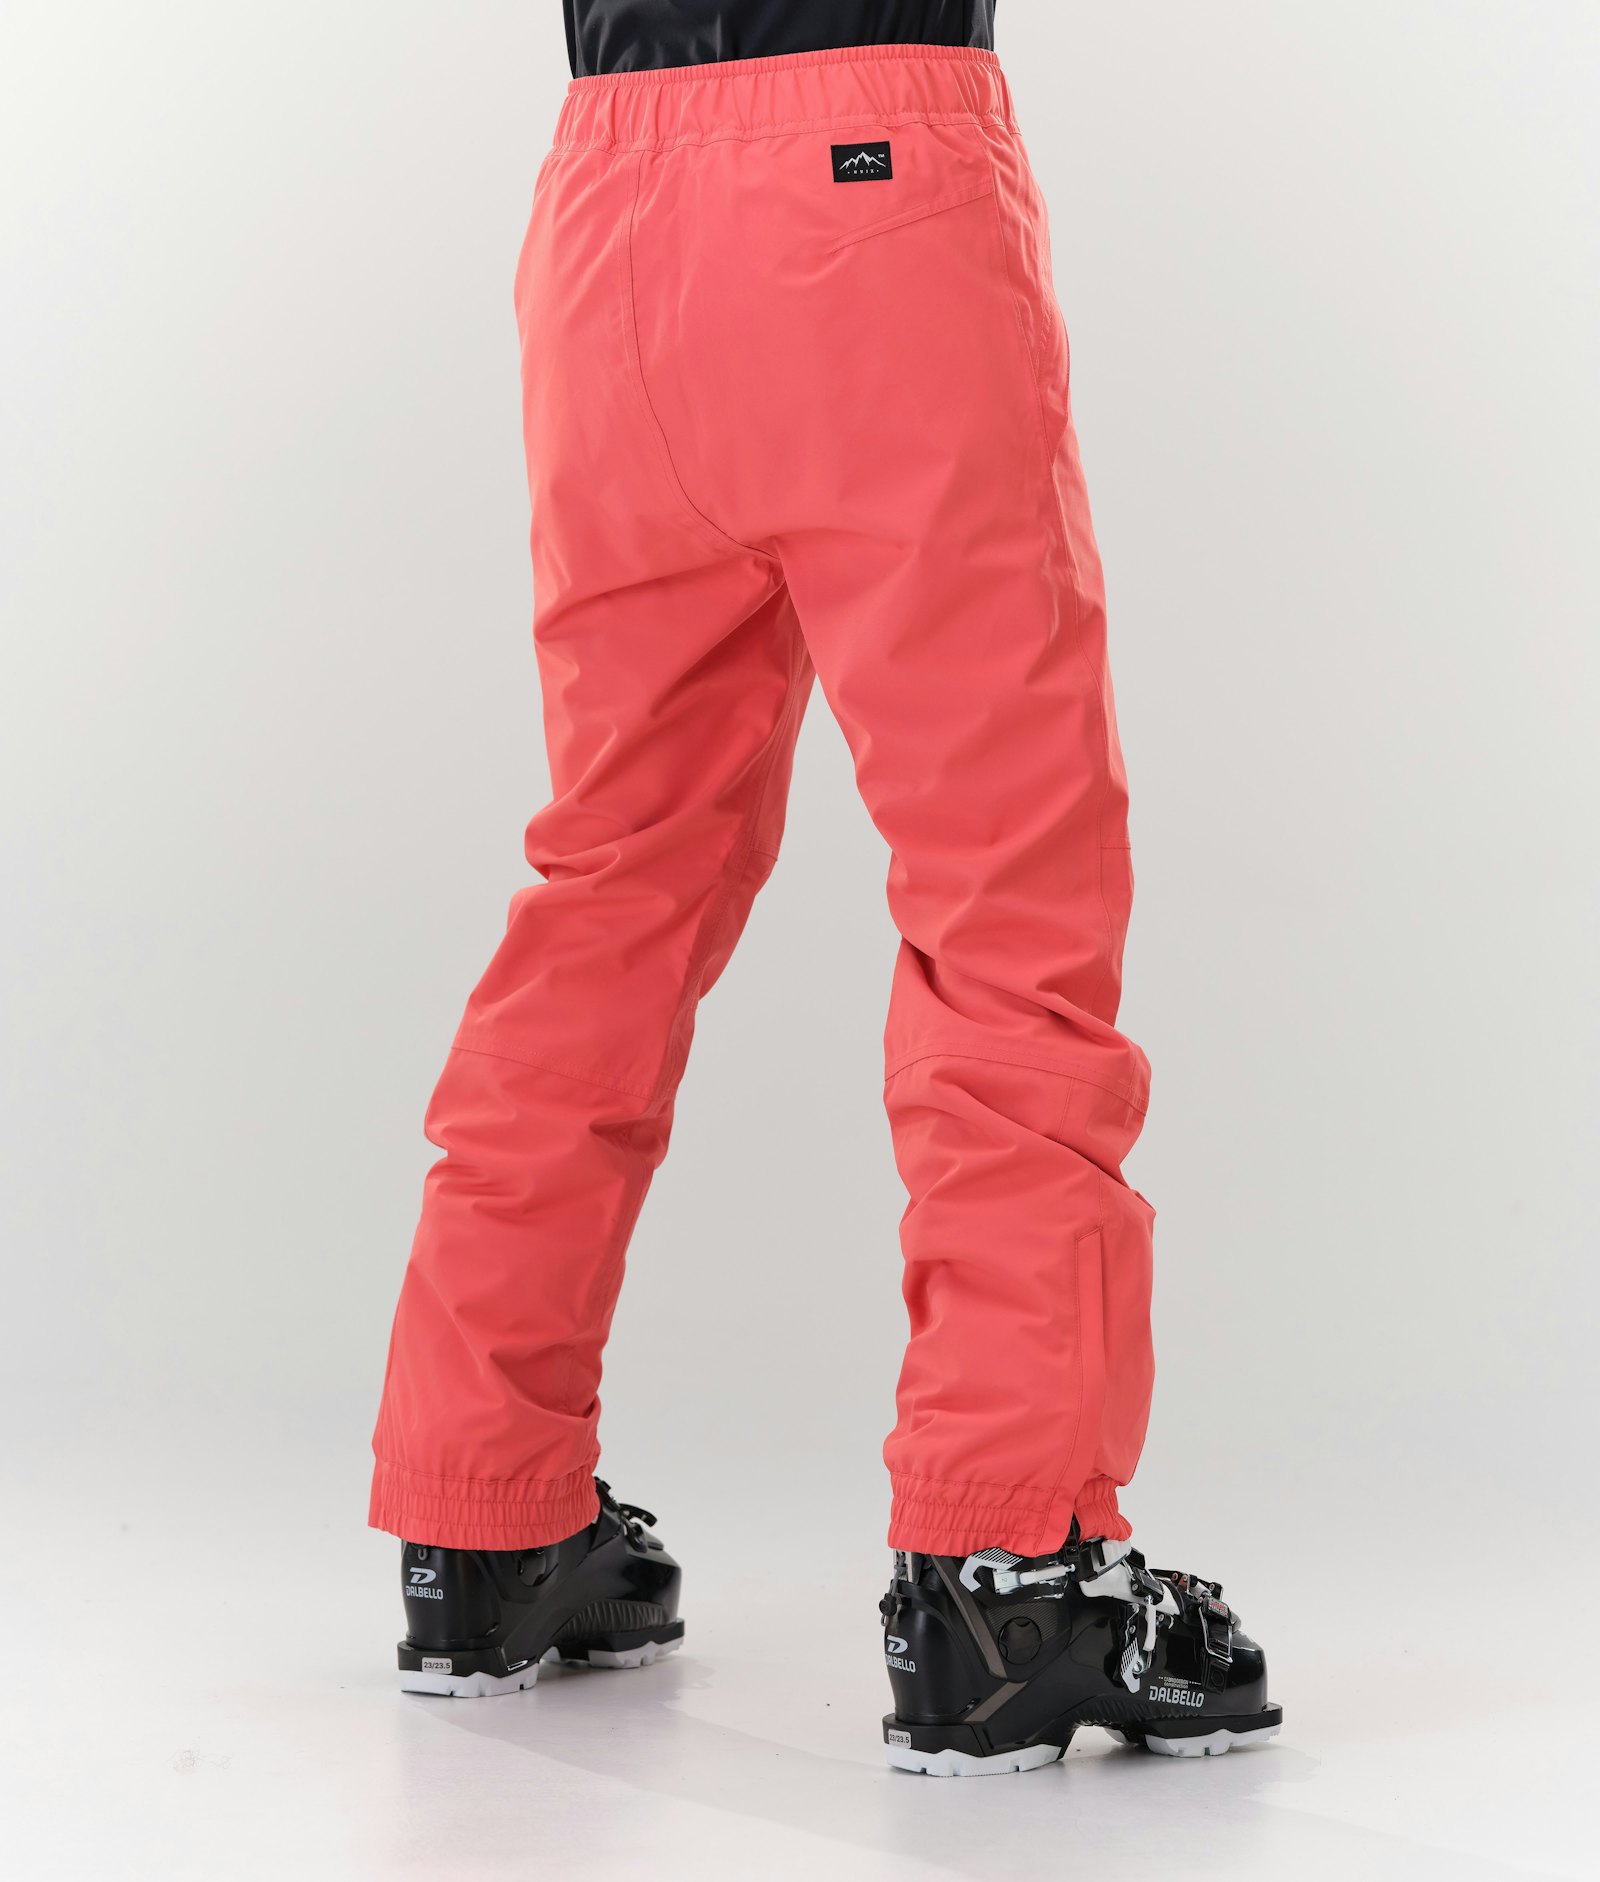 Blizzard W 2020 Ski Pants Women Coral